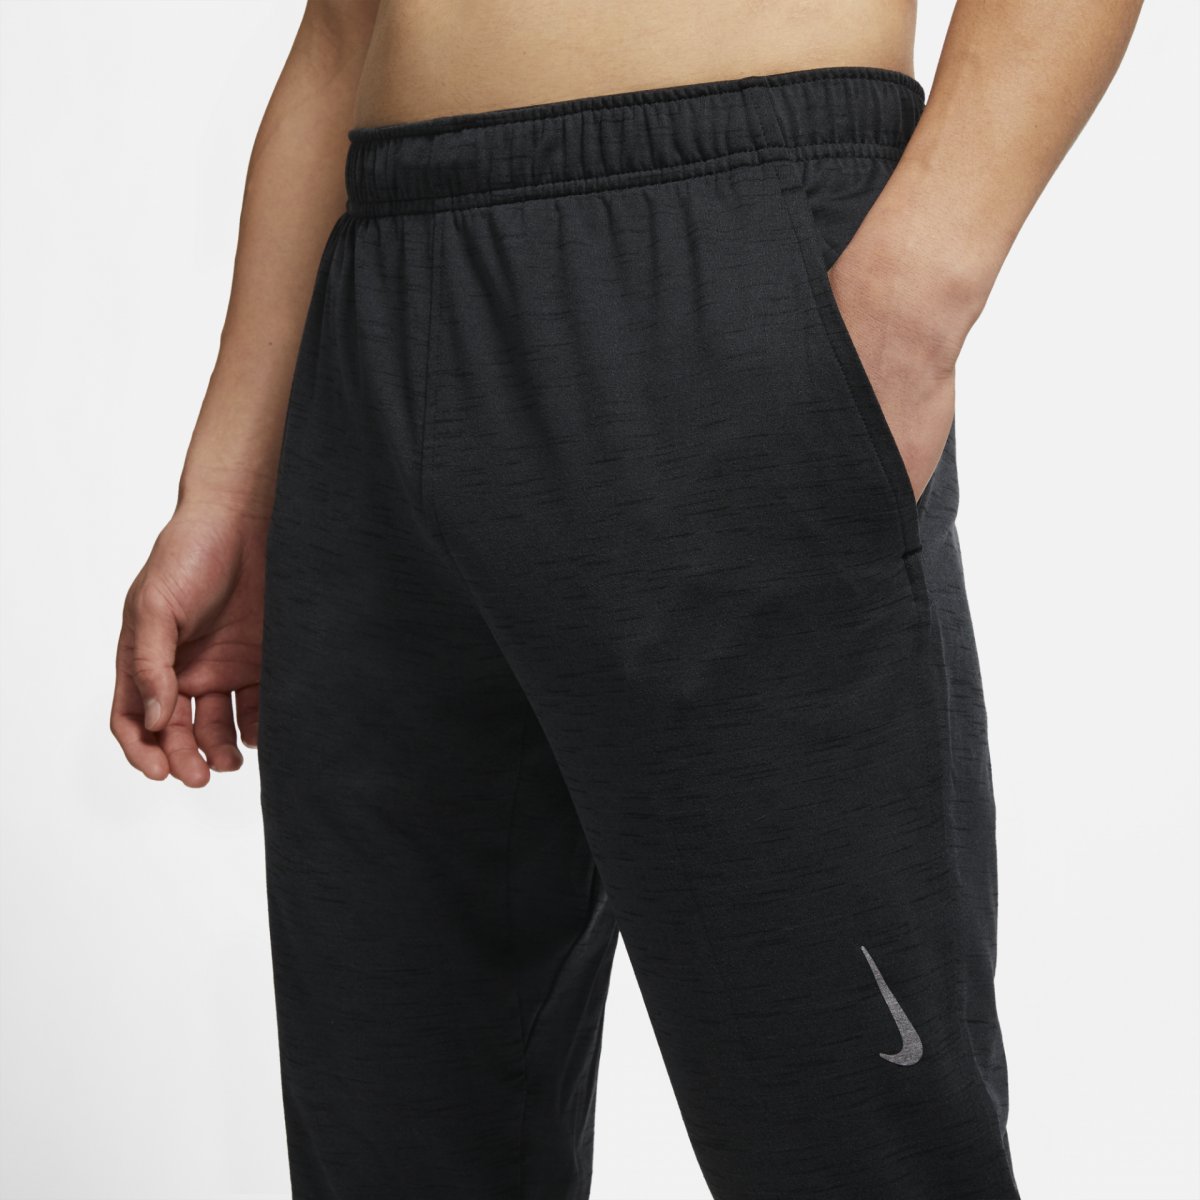 Nike Yoga Dri-FIT Black Men's training pants - Pants and tights